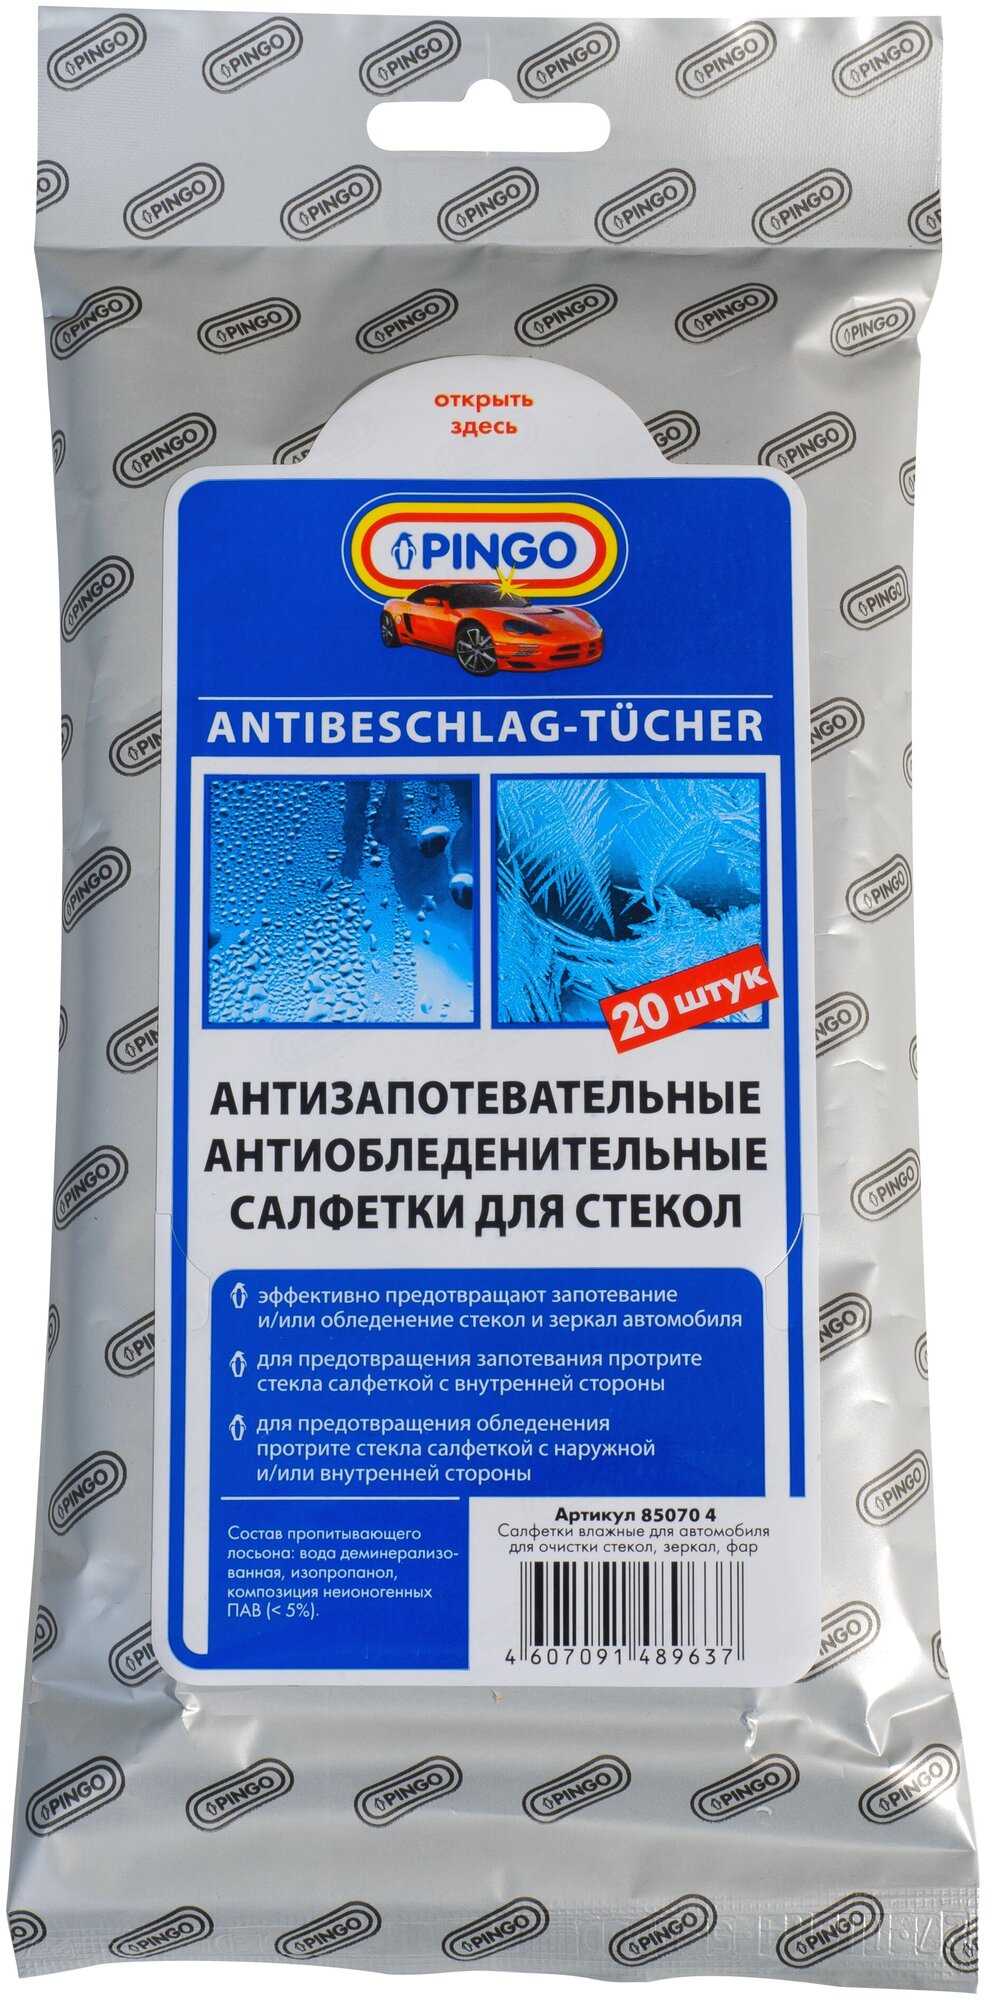 Салфетки антизапотевательные и антиобледенительные для стекол Pingo 20 шт85070-4